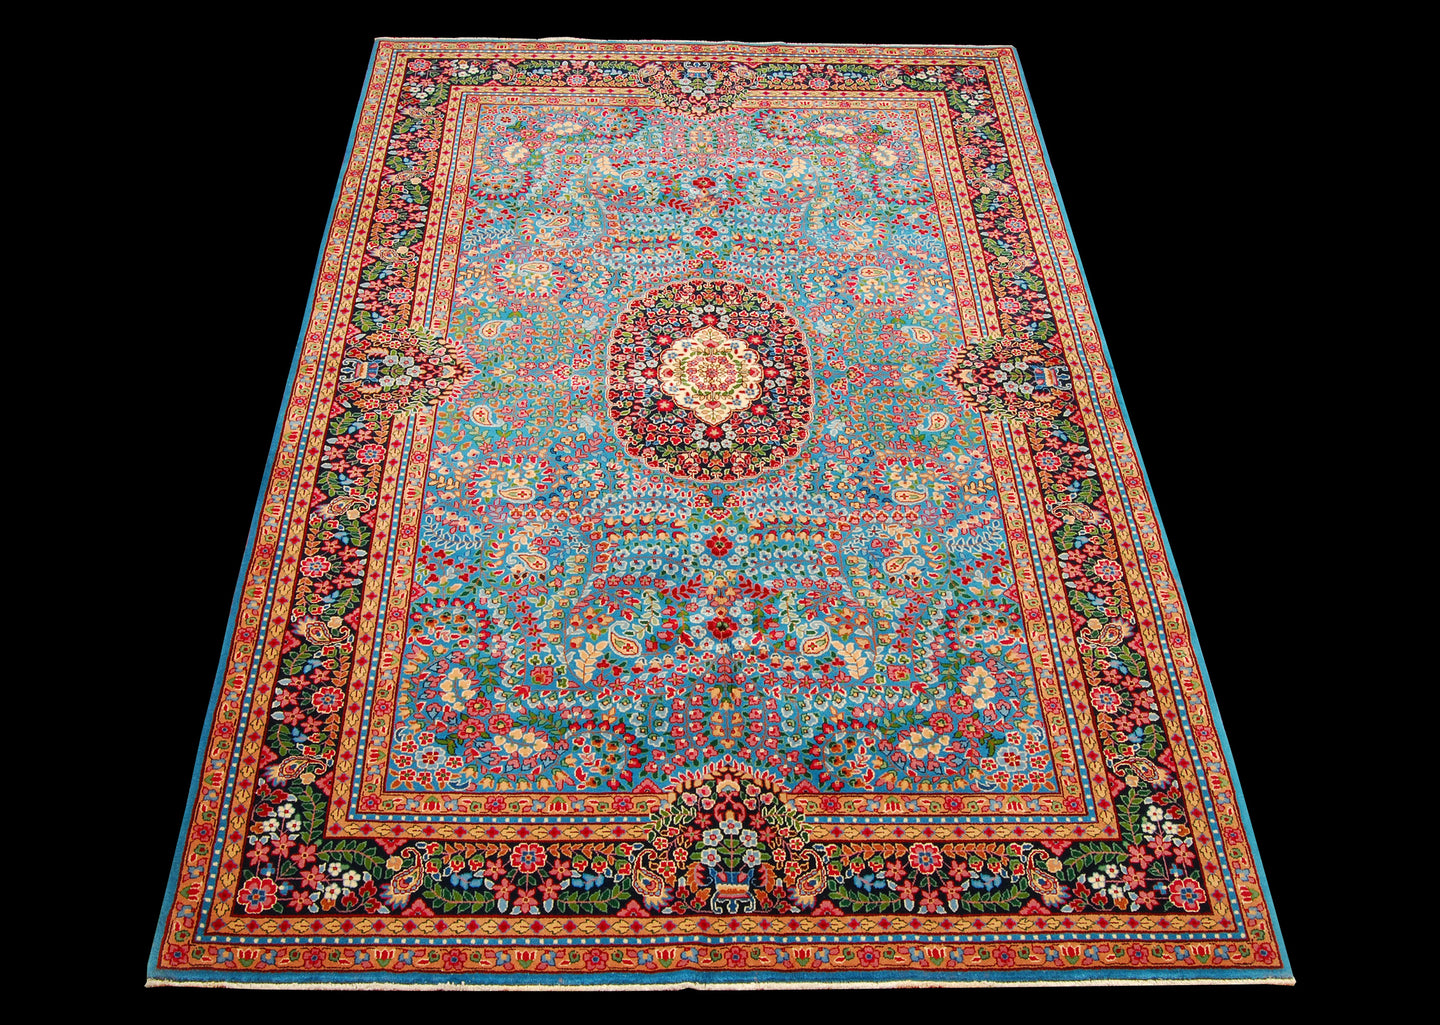 Tappeto Carpet Tapis Teppich Alfombra Rug Berkana (Hand Made) CM 278x185